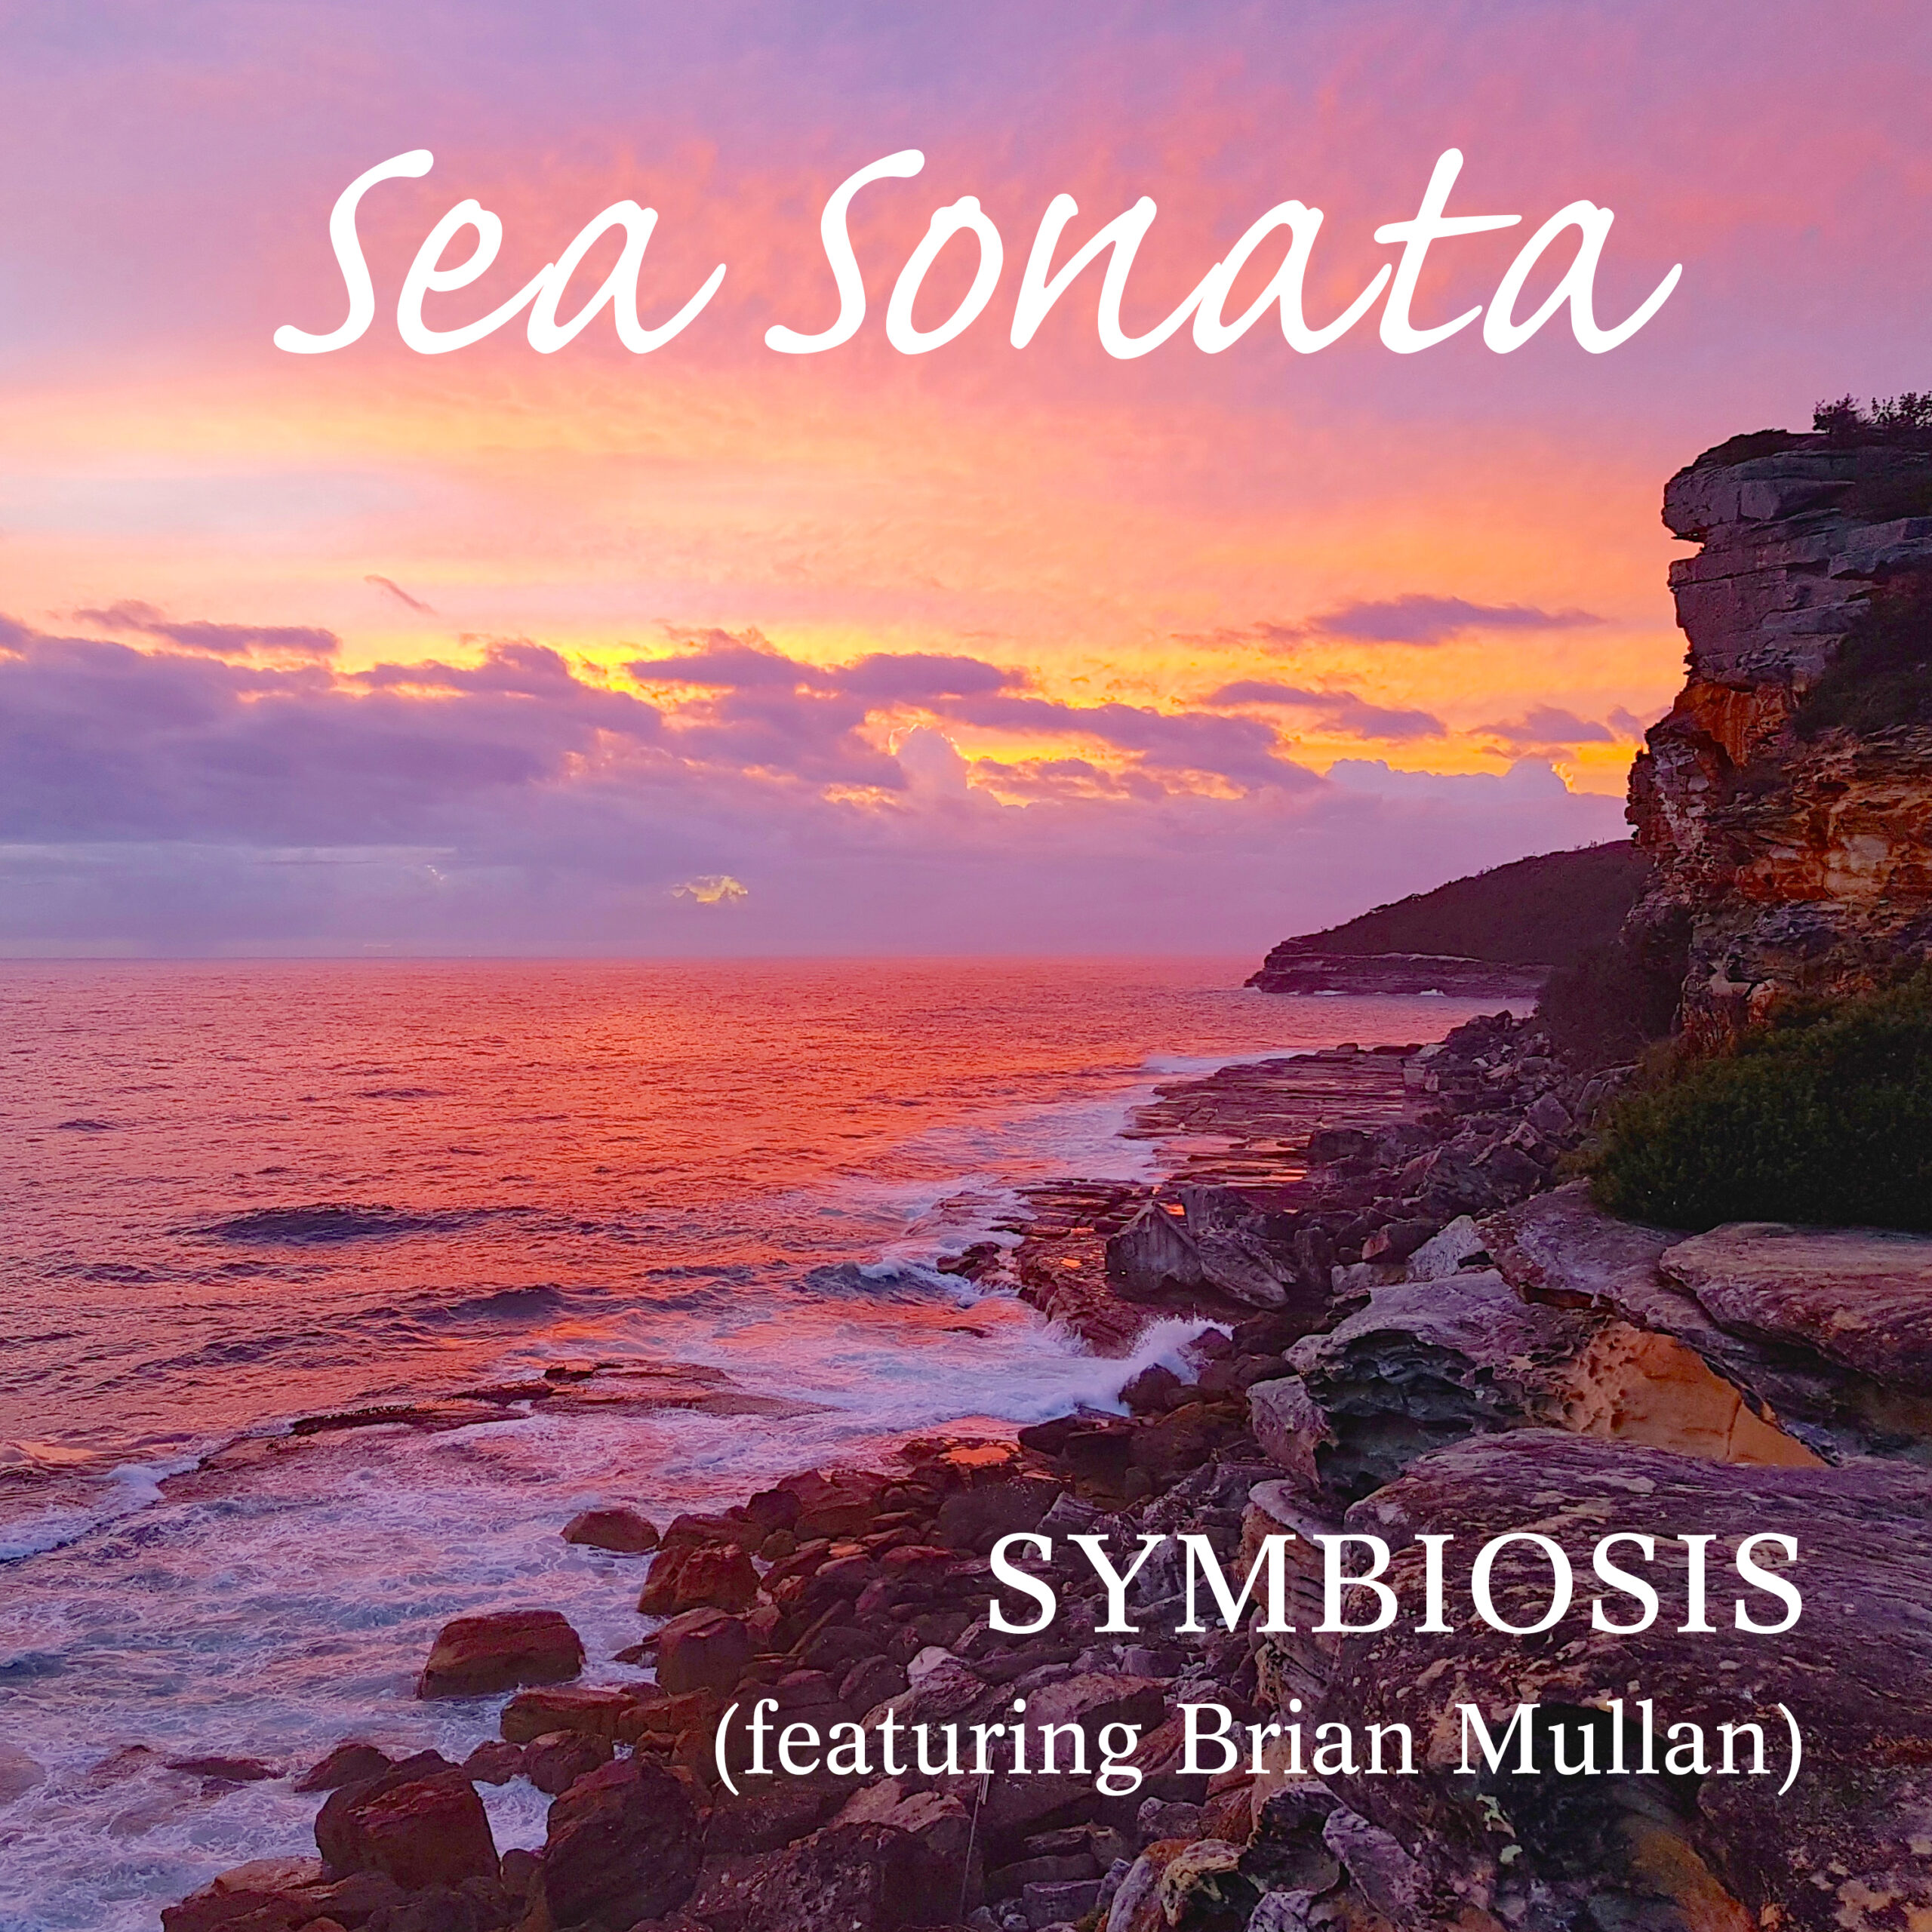 The artwork for Sea Sonata by Symbiosis